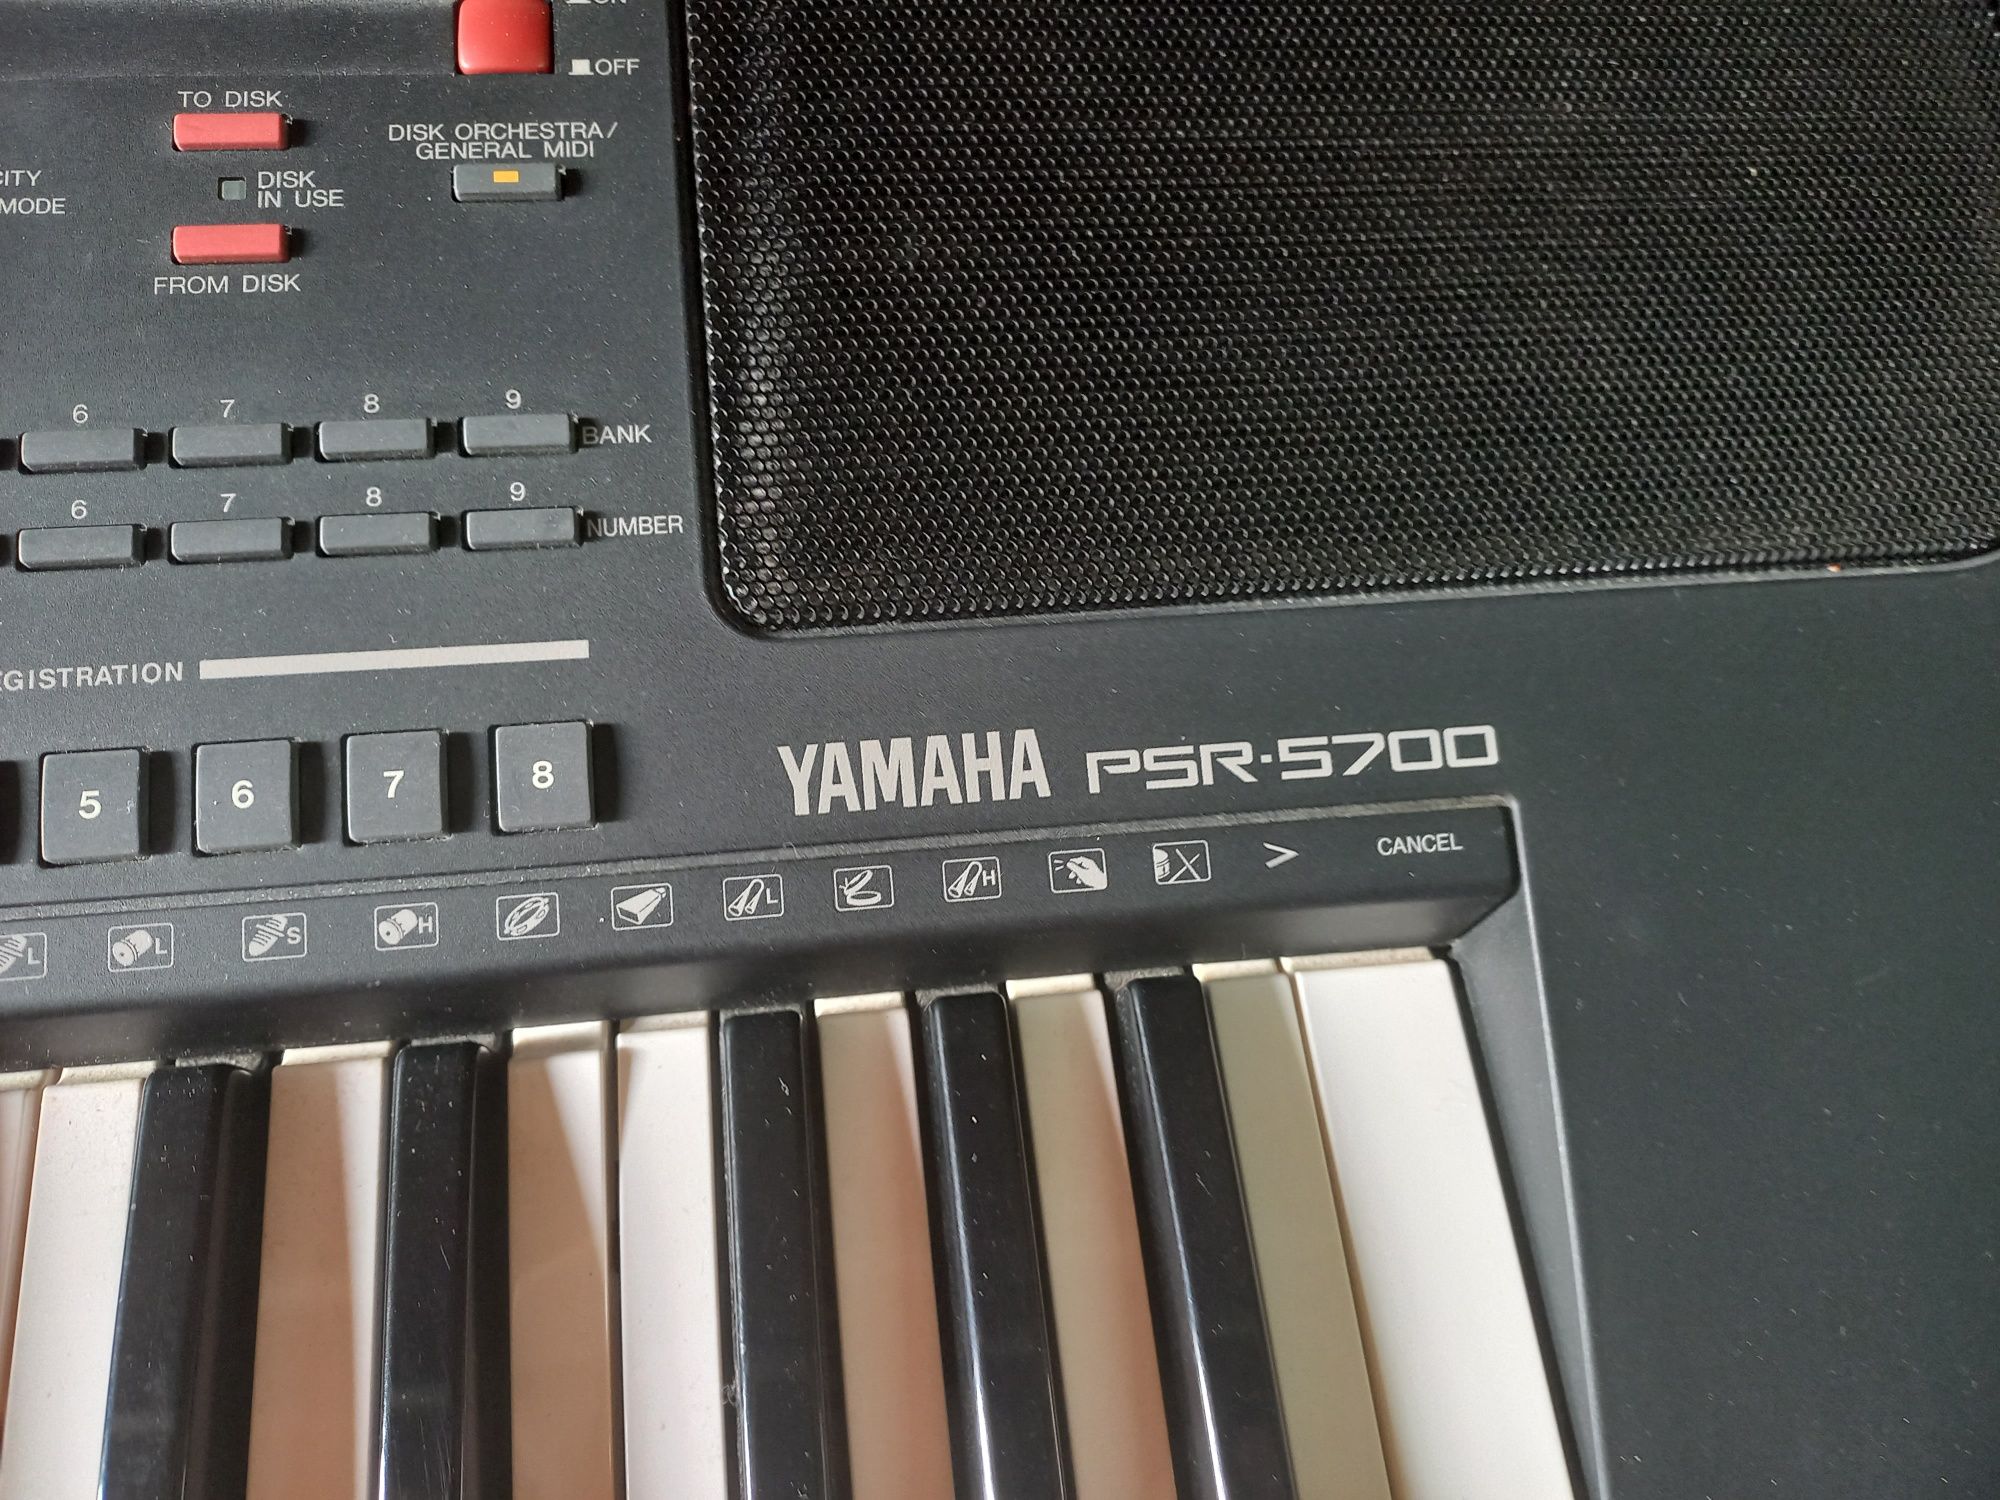 Orga Yamaha PSR 5700 cu discheta